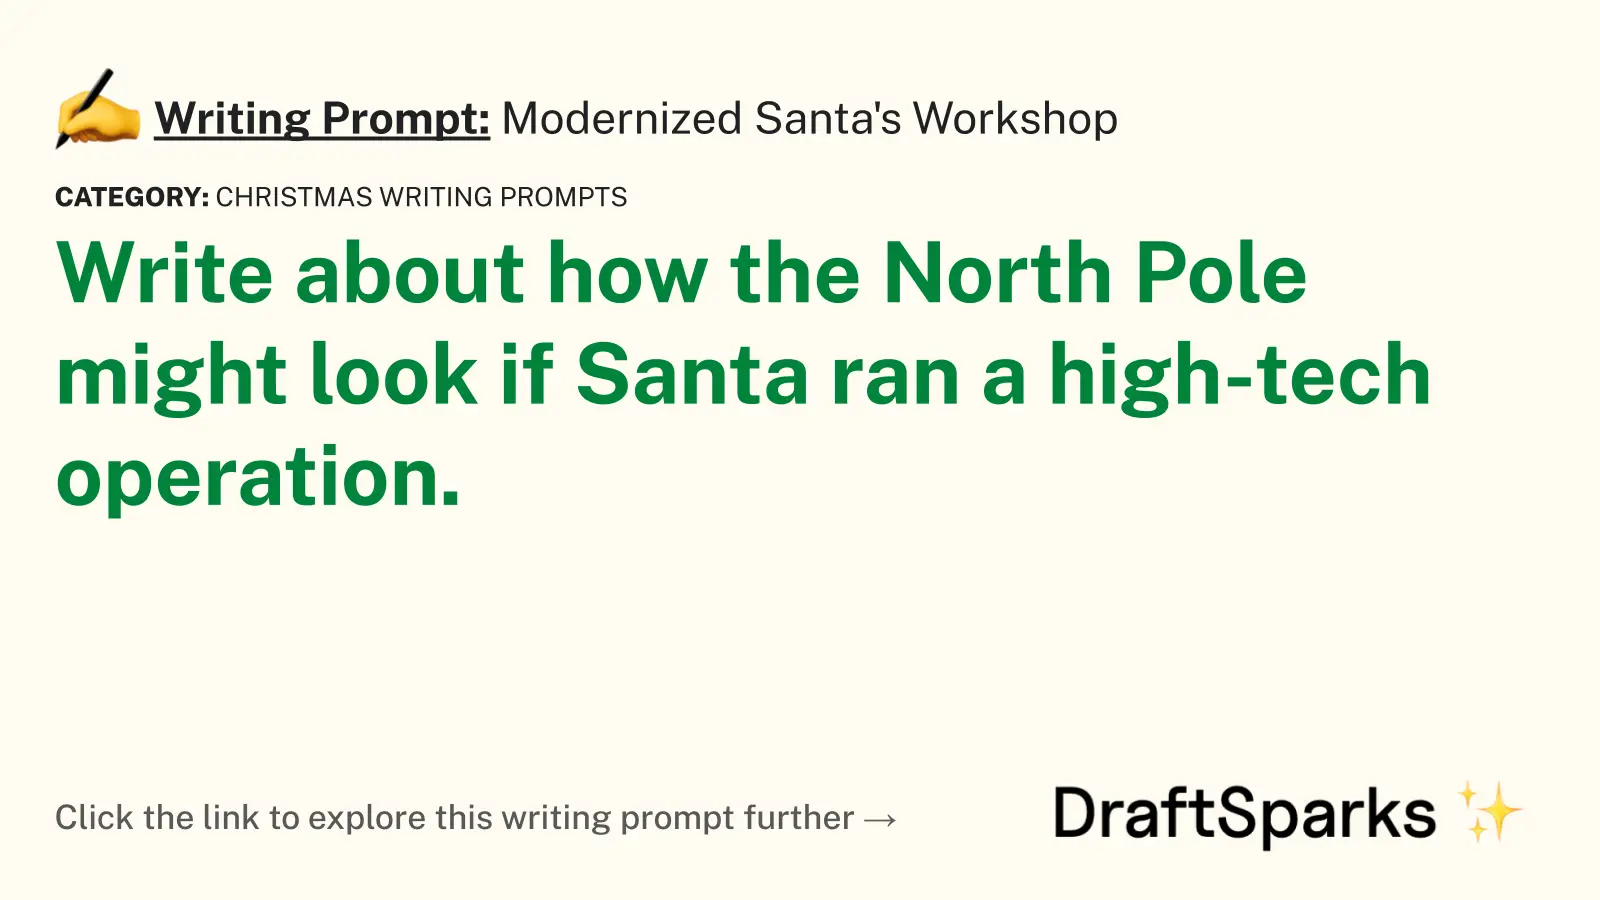 Modernized Santa’s Workshop